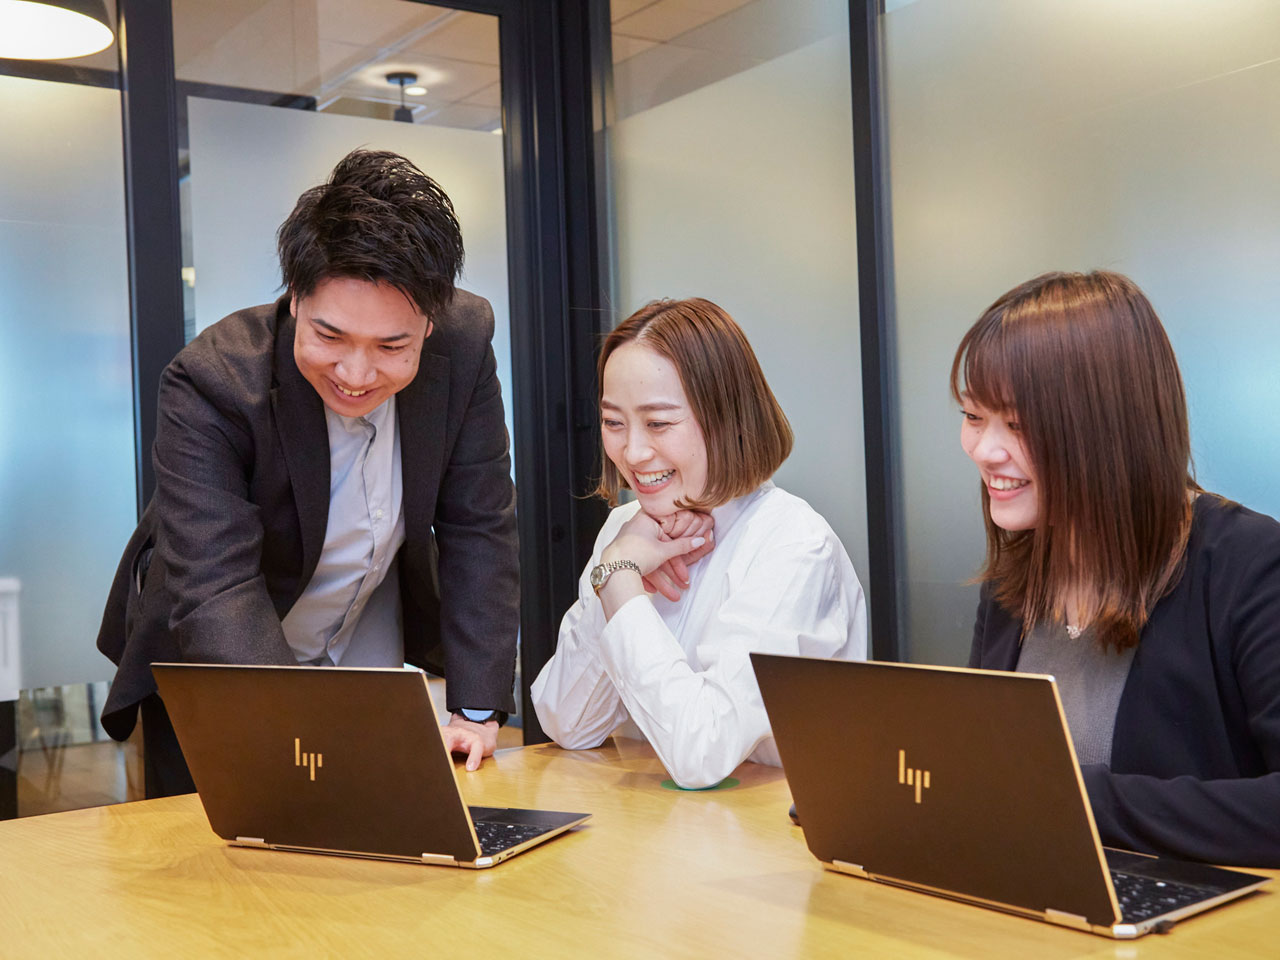 同社は「誰もが“ワクワク”働ける世界を創る」をビジョンに掲げている。人事評価制度を多くの日本企業に導入することで、働く人が自らの未来を明るく捉え、日々の仕事に“ワクワク”した気持ちで臨める世界を作りたいという思いが込められています。